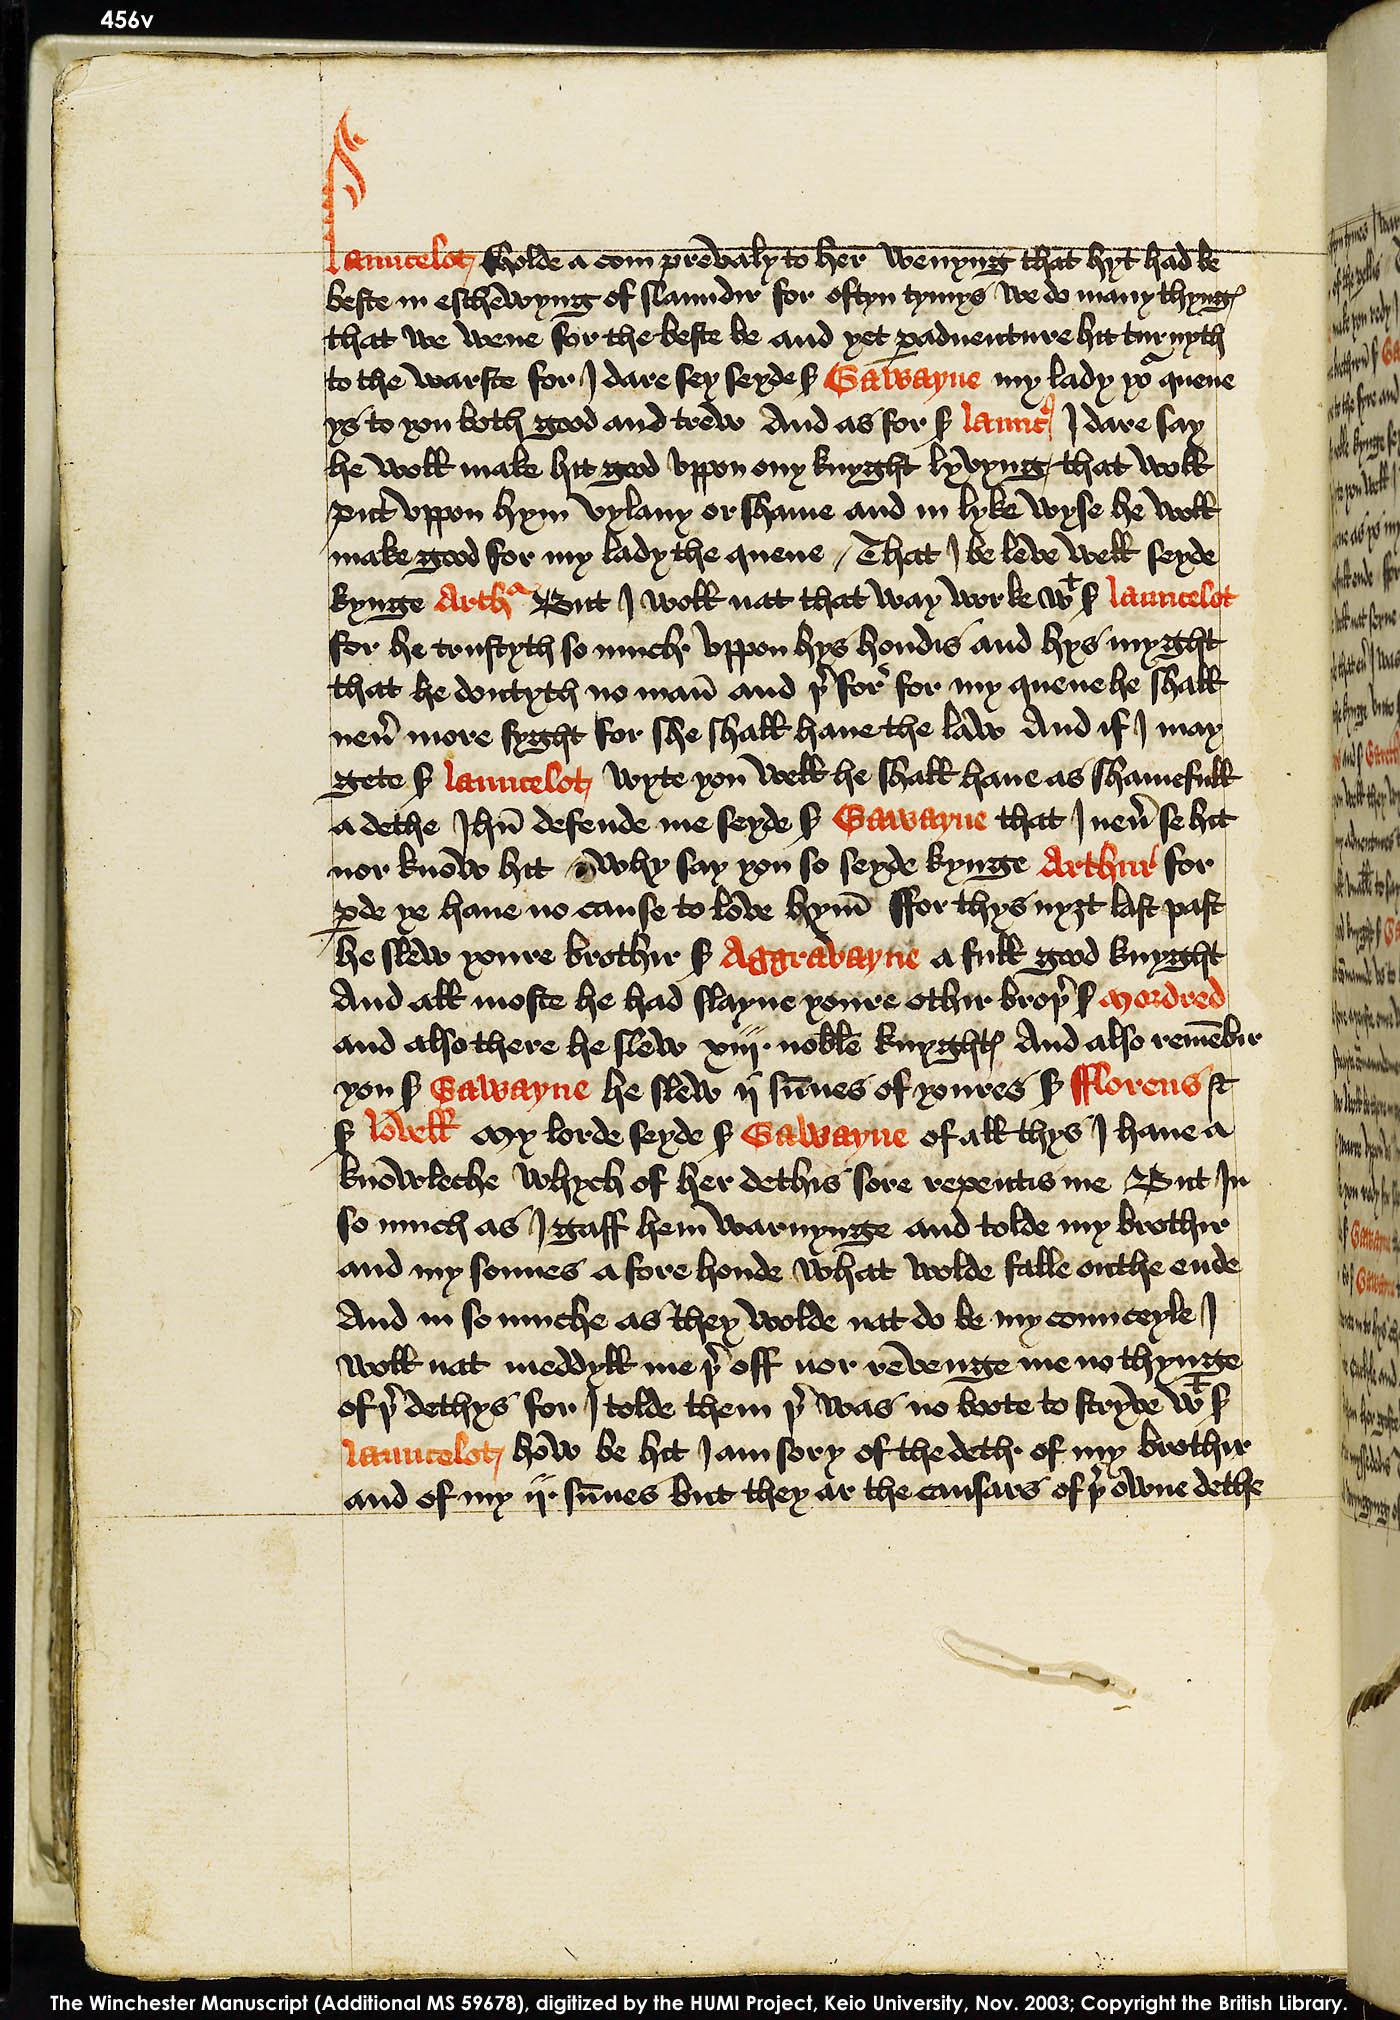 Folio 456v